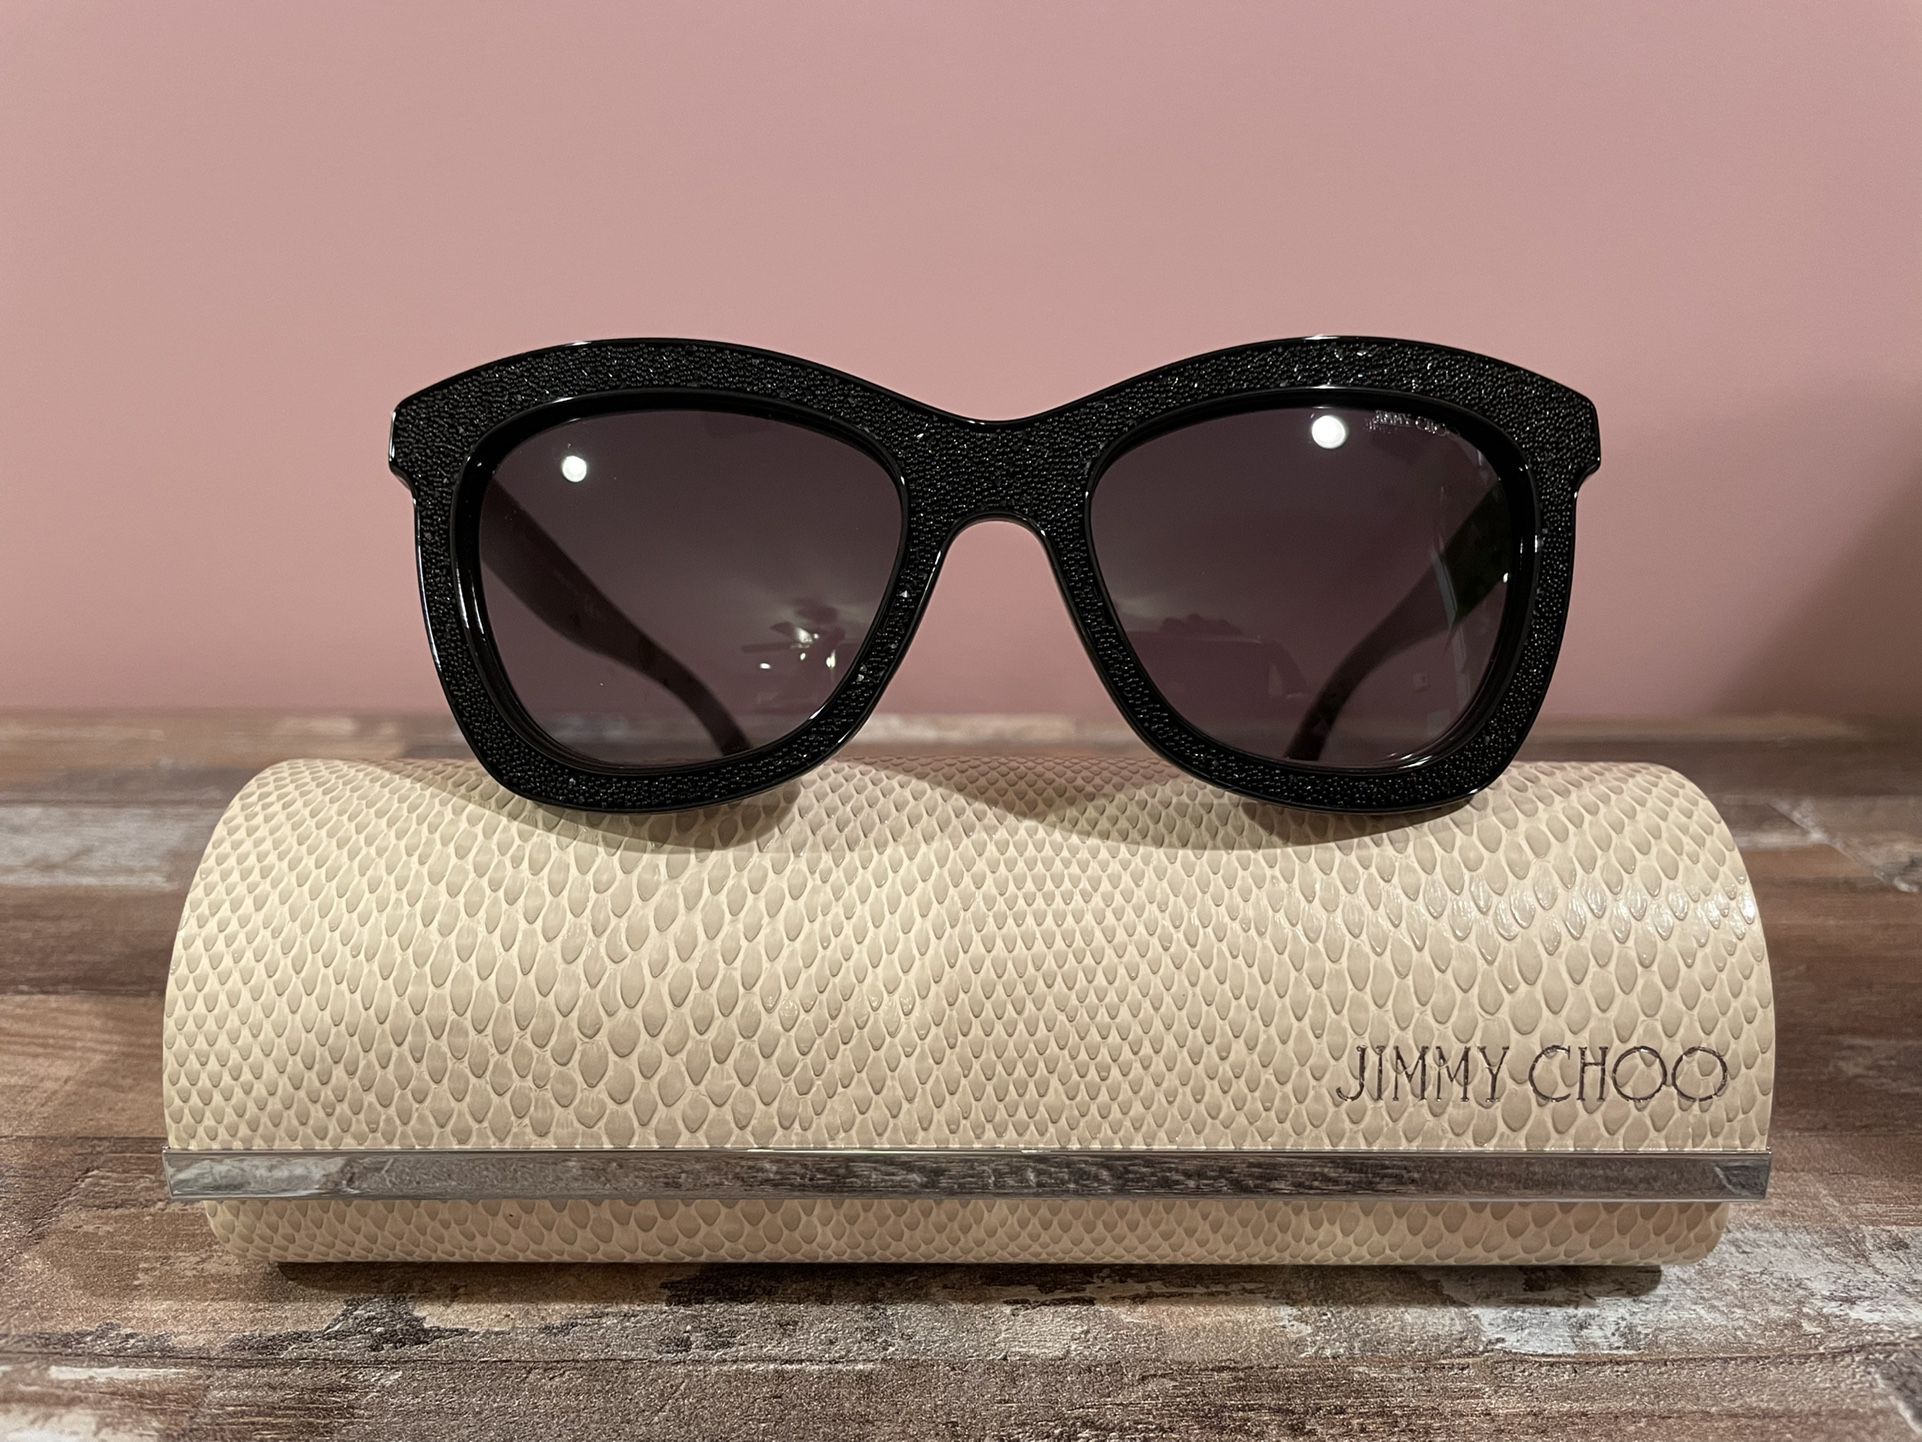 Jimmy Choo Flash Sunglasses